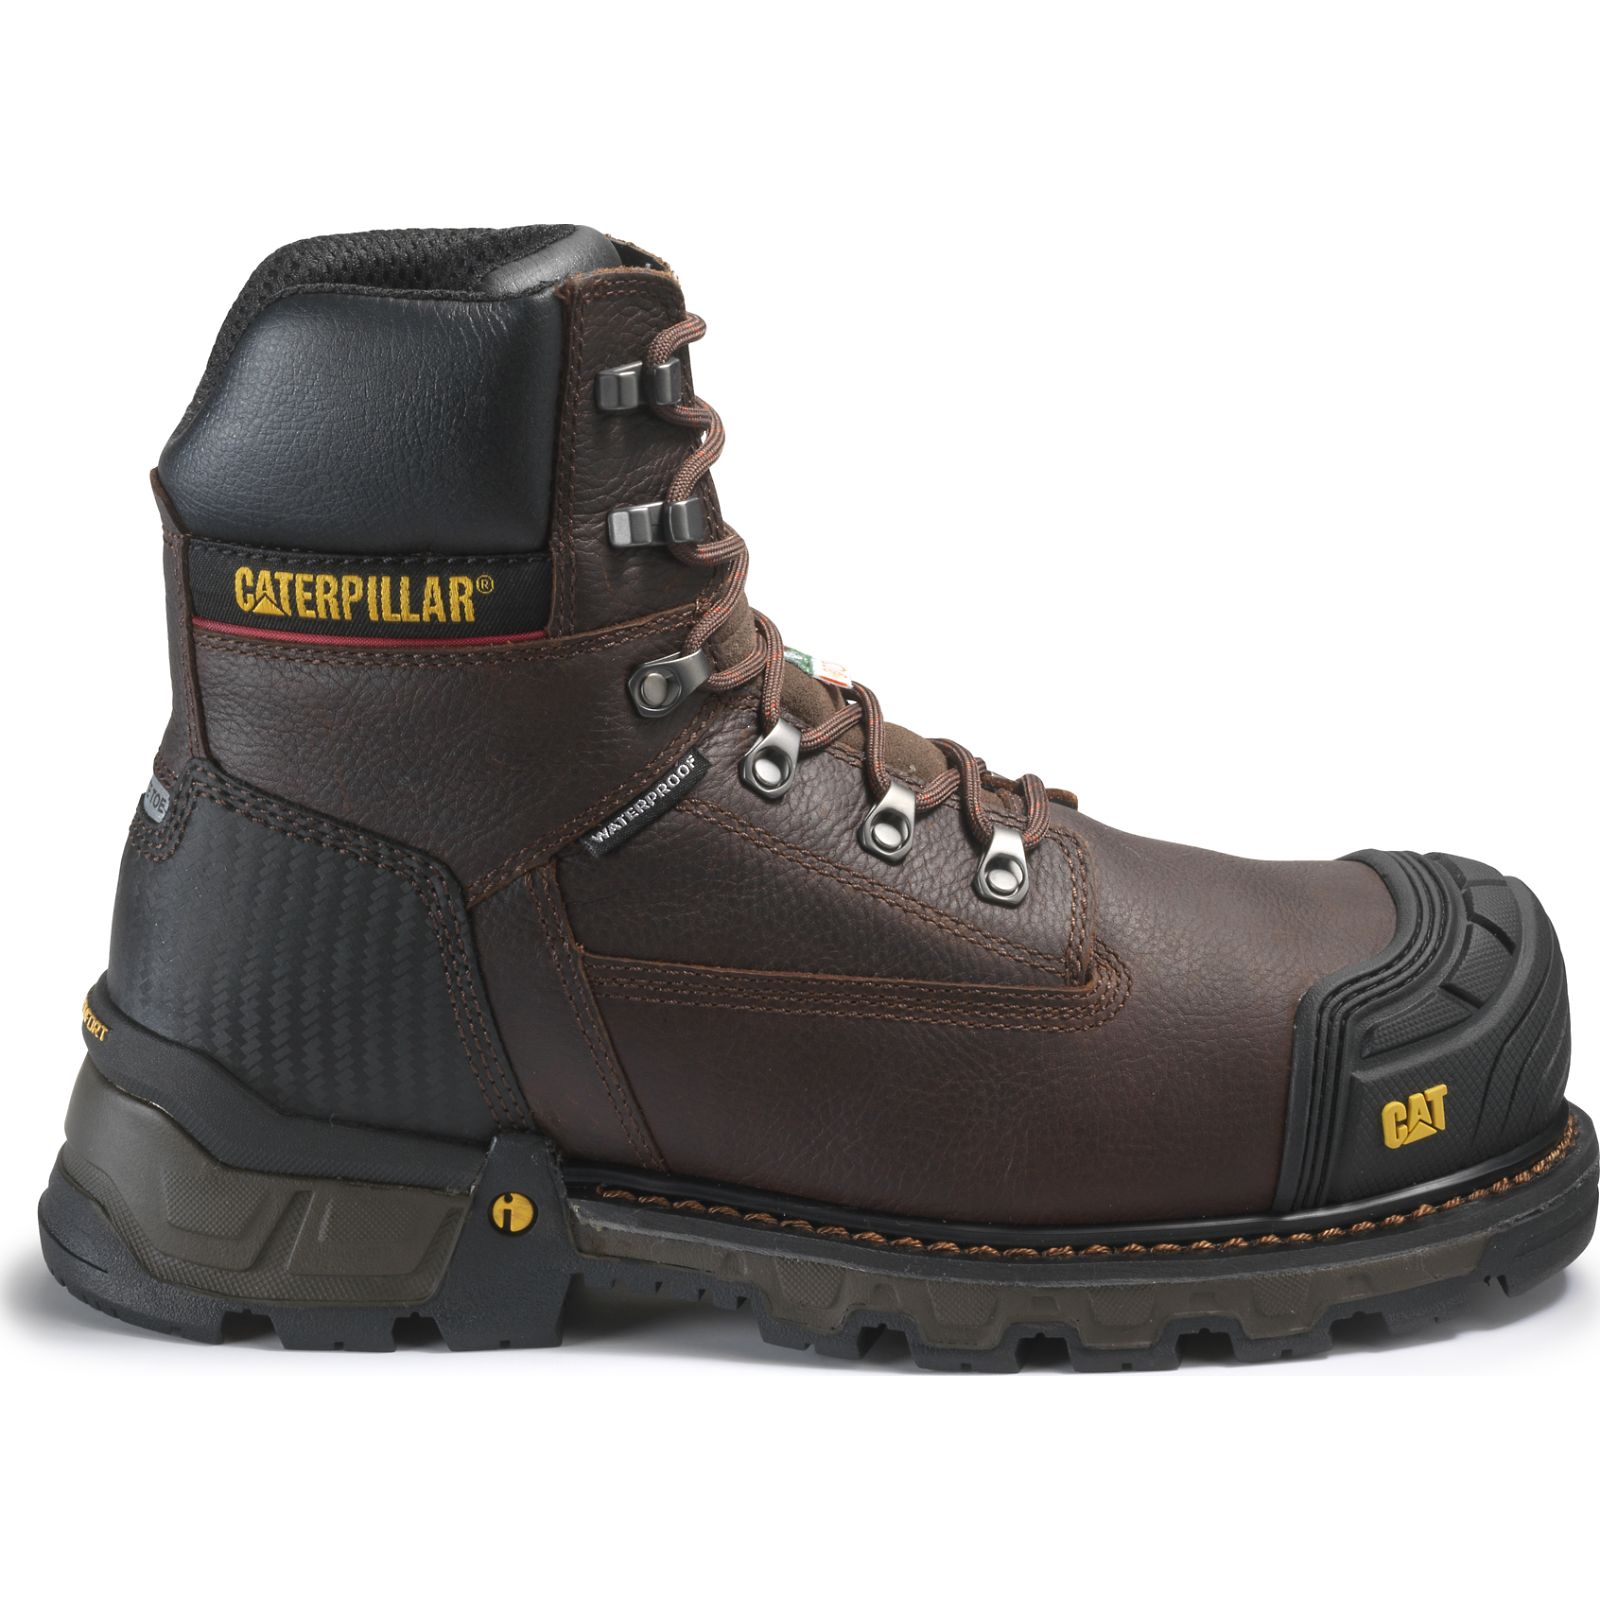 Caterpillar Work Boots Dubai - Caterpillar Excavator Xl 6” Wp Tx Ct Csa Mens - Brown IDUSMZ594